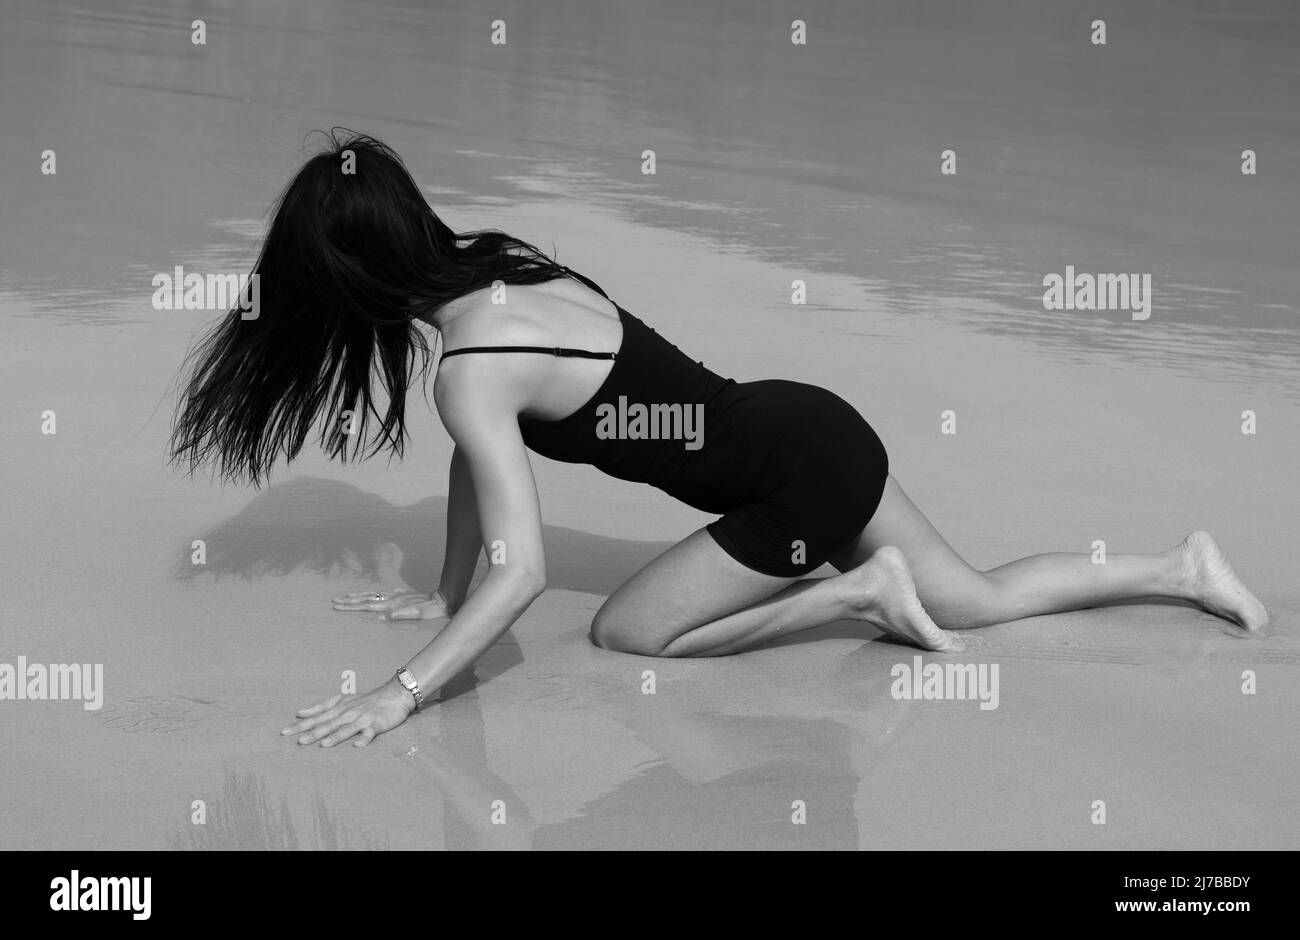 Eine Frau in einem kurzen schwarzen Kleid mit langen schwarzen Haaren kriecht auf nassem Sand am Strand. Ihr Schatten und ihre Reflexion sind zu sehen. Monochrom. Stockfoto